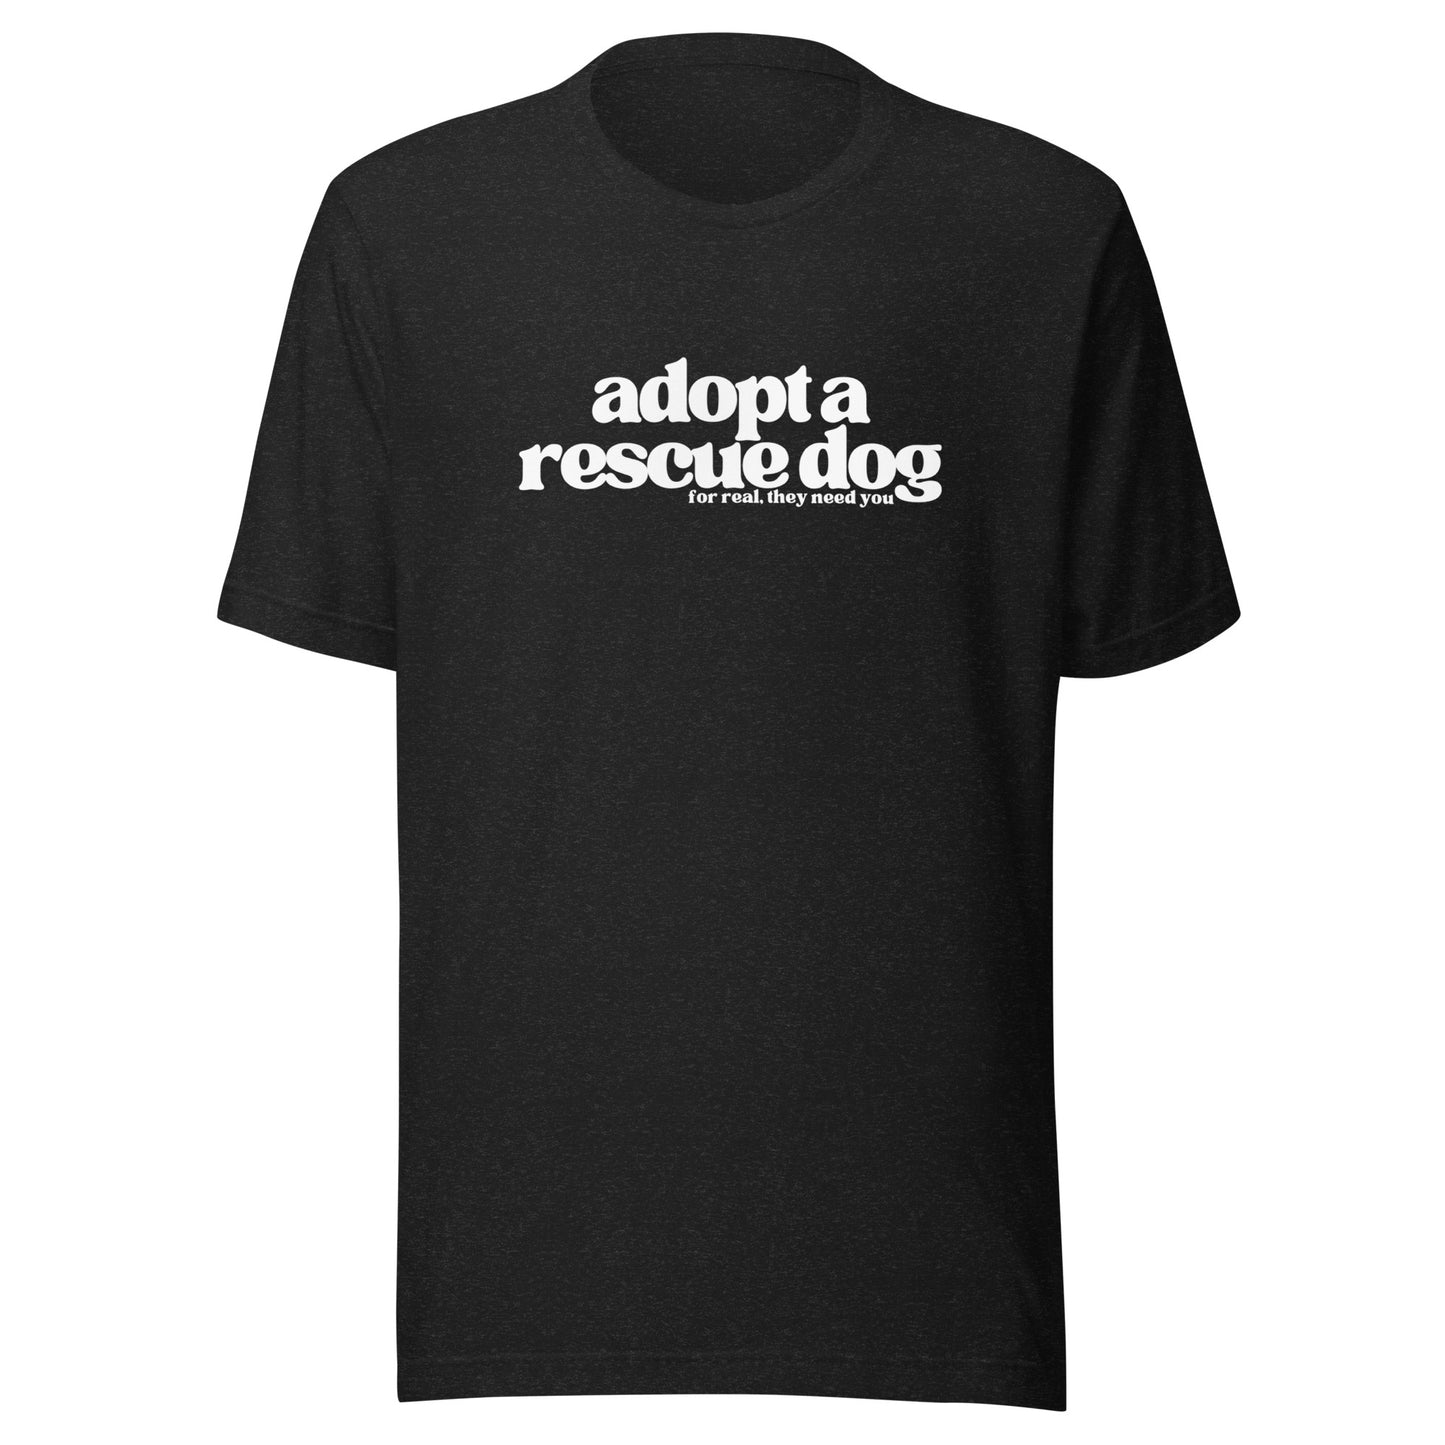 The Adopt a Rescue Dog shirt